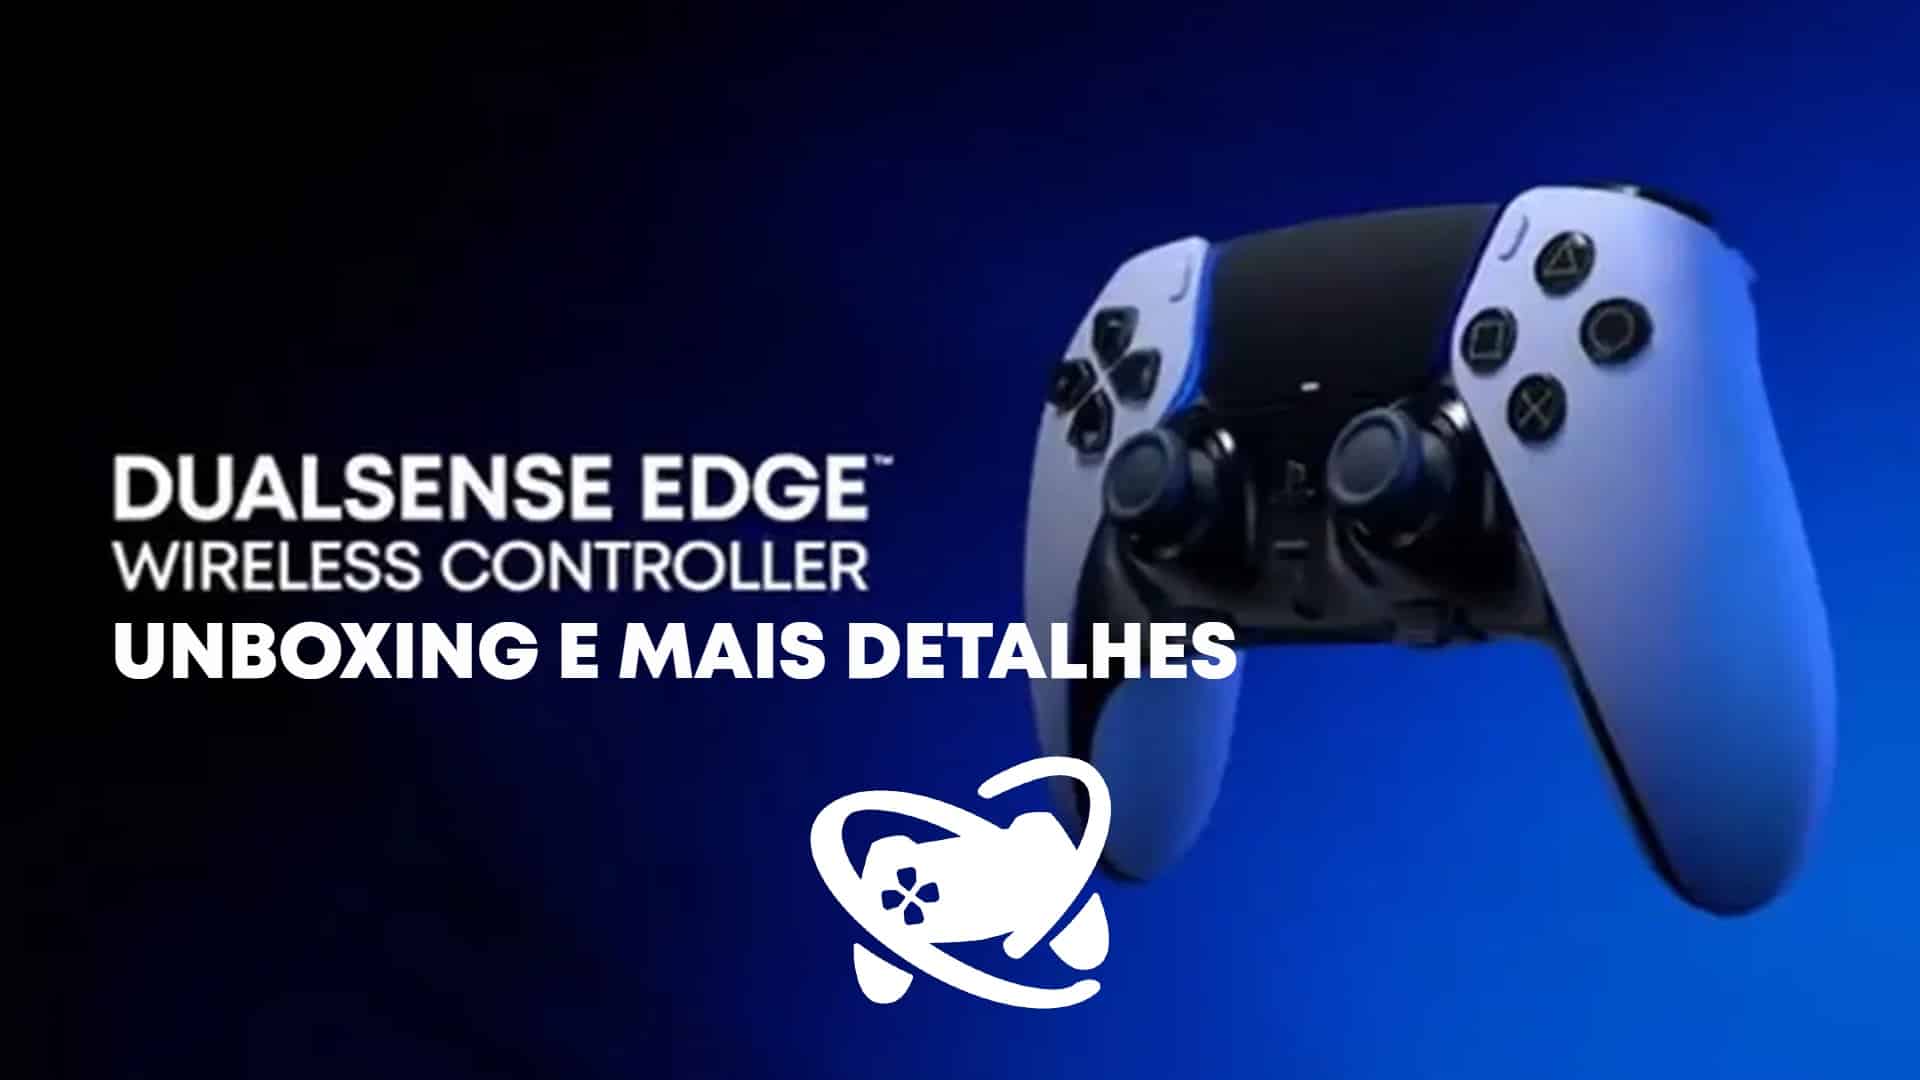 Testamos o PlayStation DualSense Edge! Veja nossas primeiras impressões